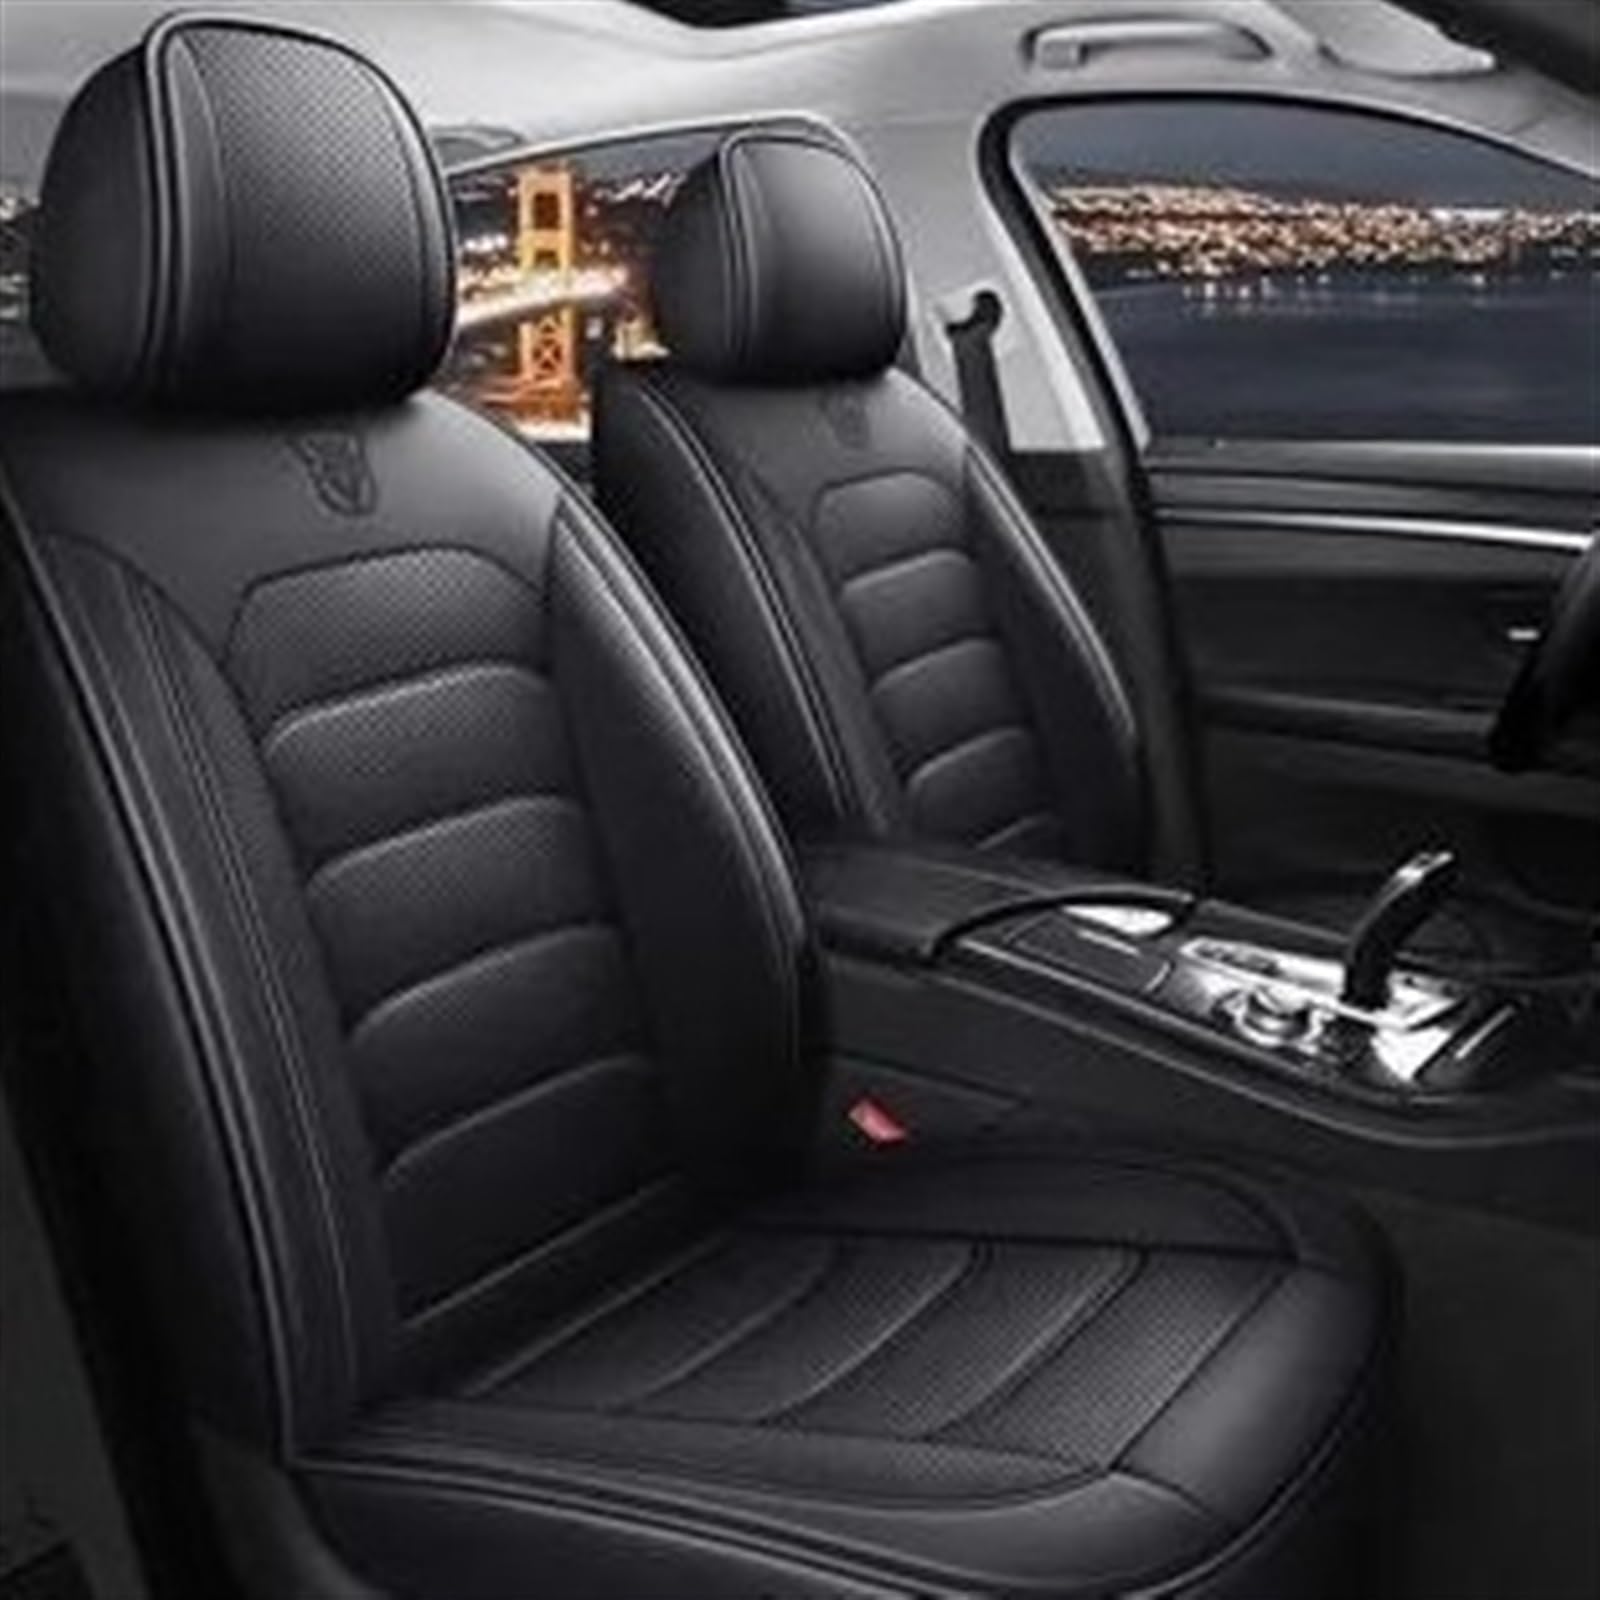 AXTAZS Auto Sitzbezügesets Kompatibel Mit Chrysler 300C Komplettset Universal 5 Sitze Autositzbezüge Für Vordersitze Rücksitzbankbezug Autositzmattenbezug Innenbezüge(5,B) von AXTAZS